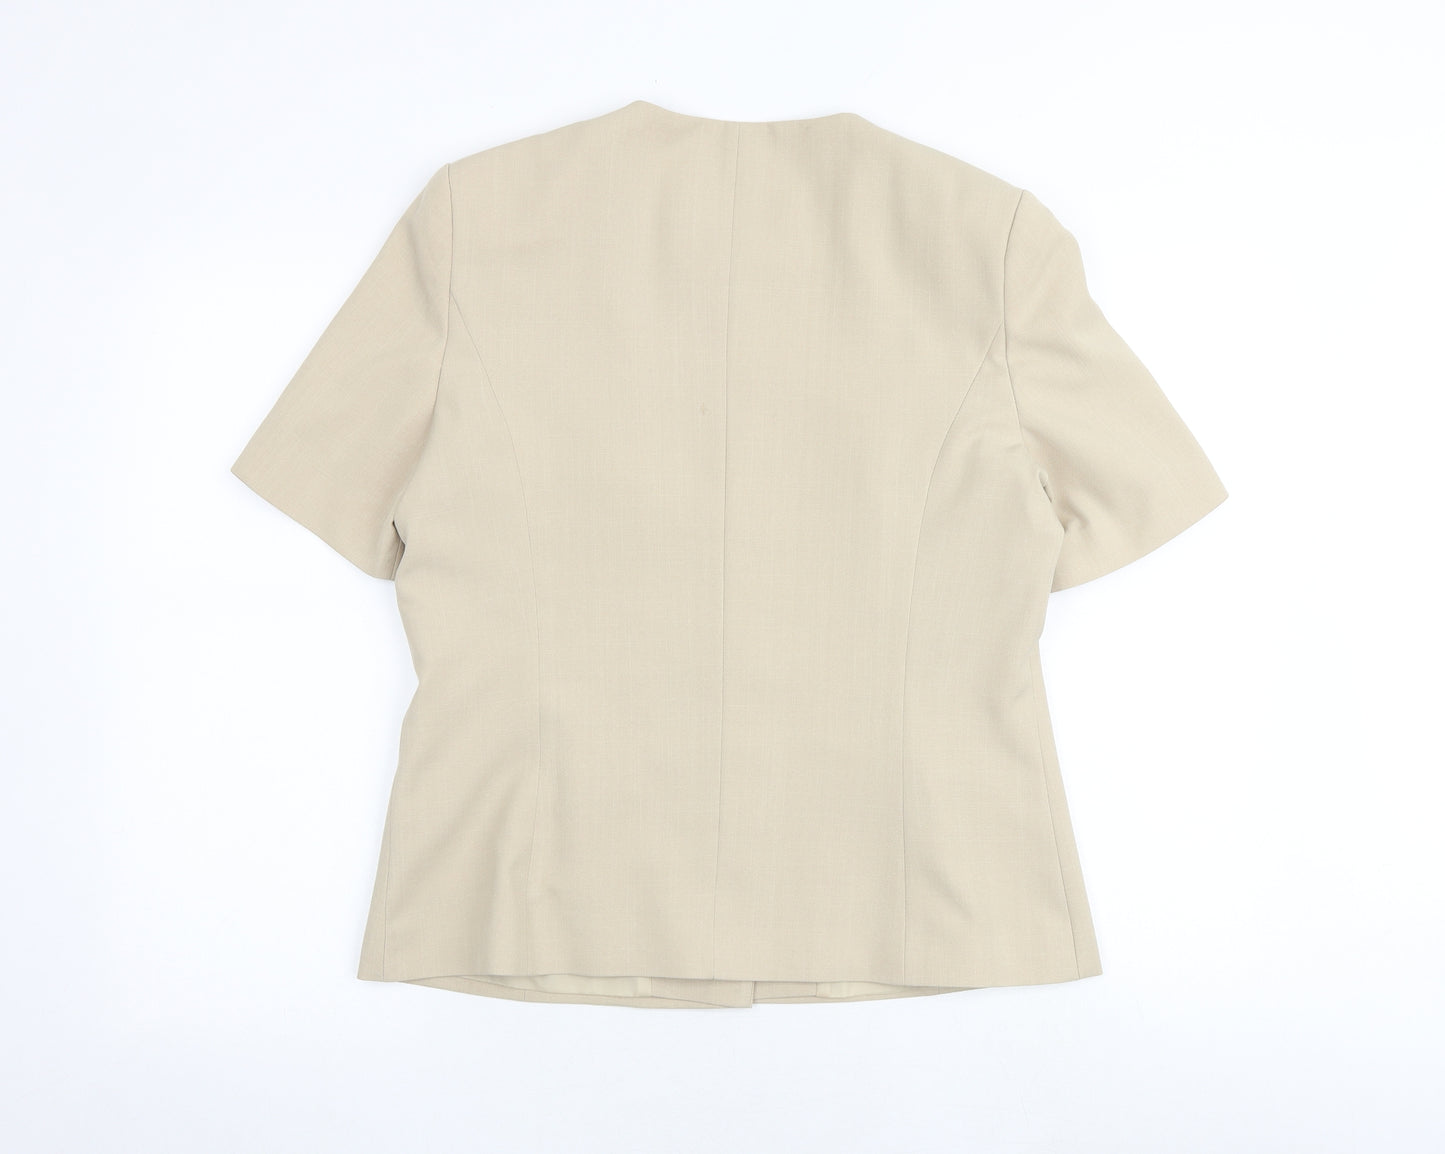 Berkertex Womens Beige Polyester Jacket Blazer Size 14